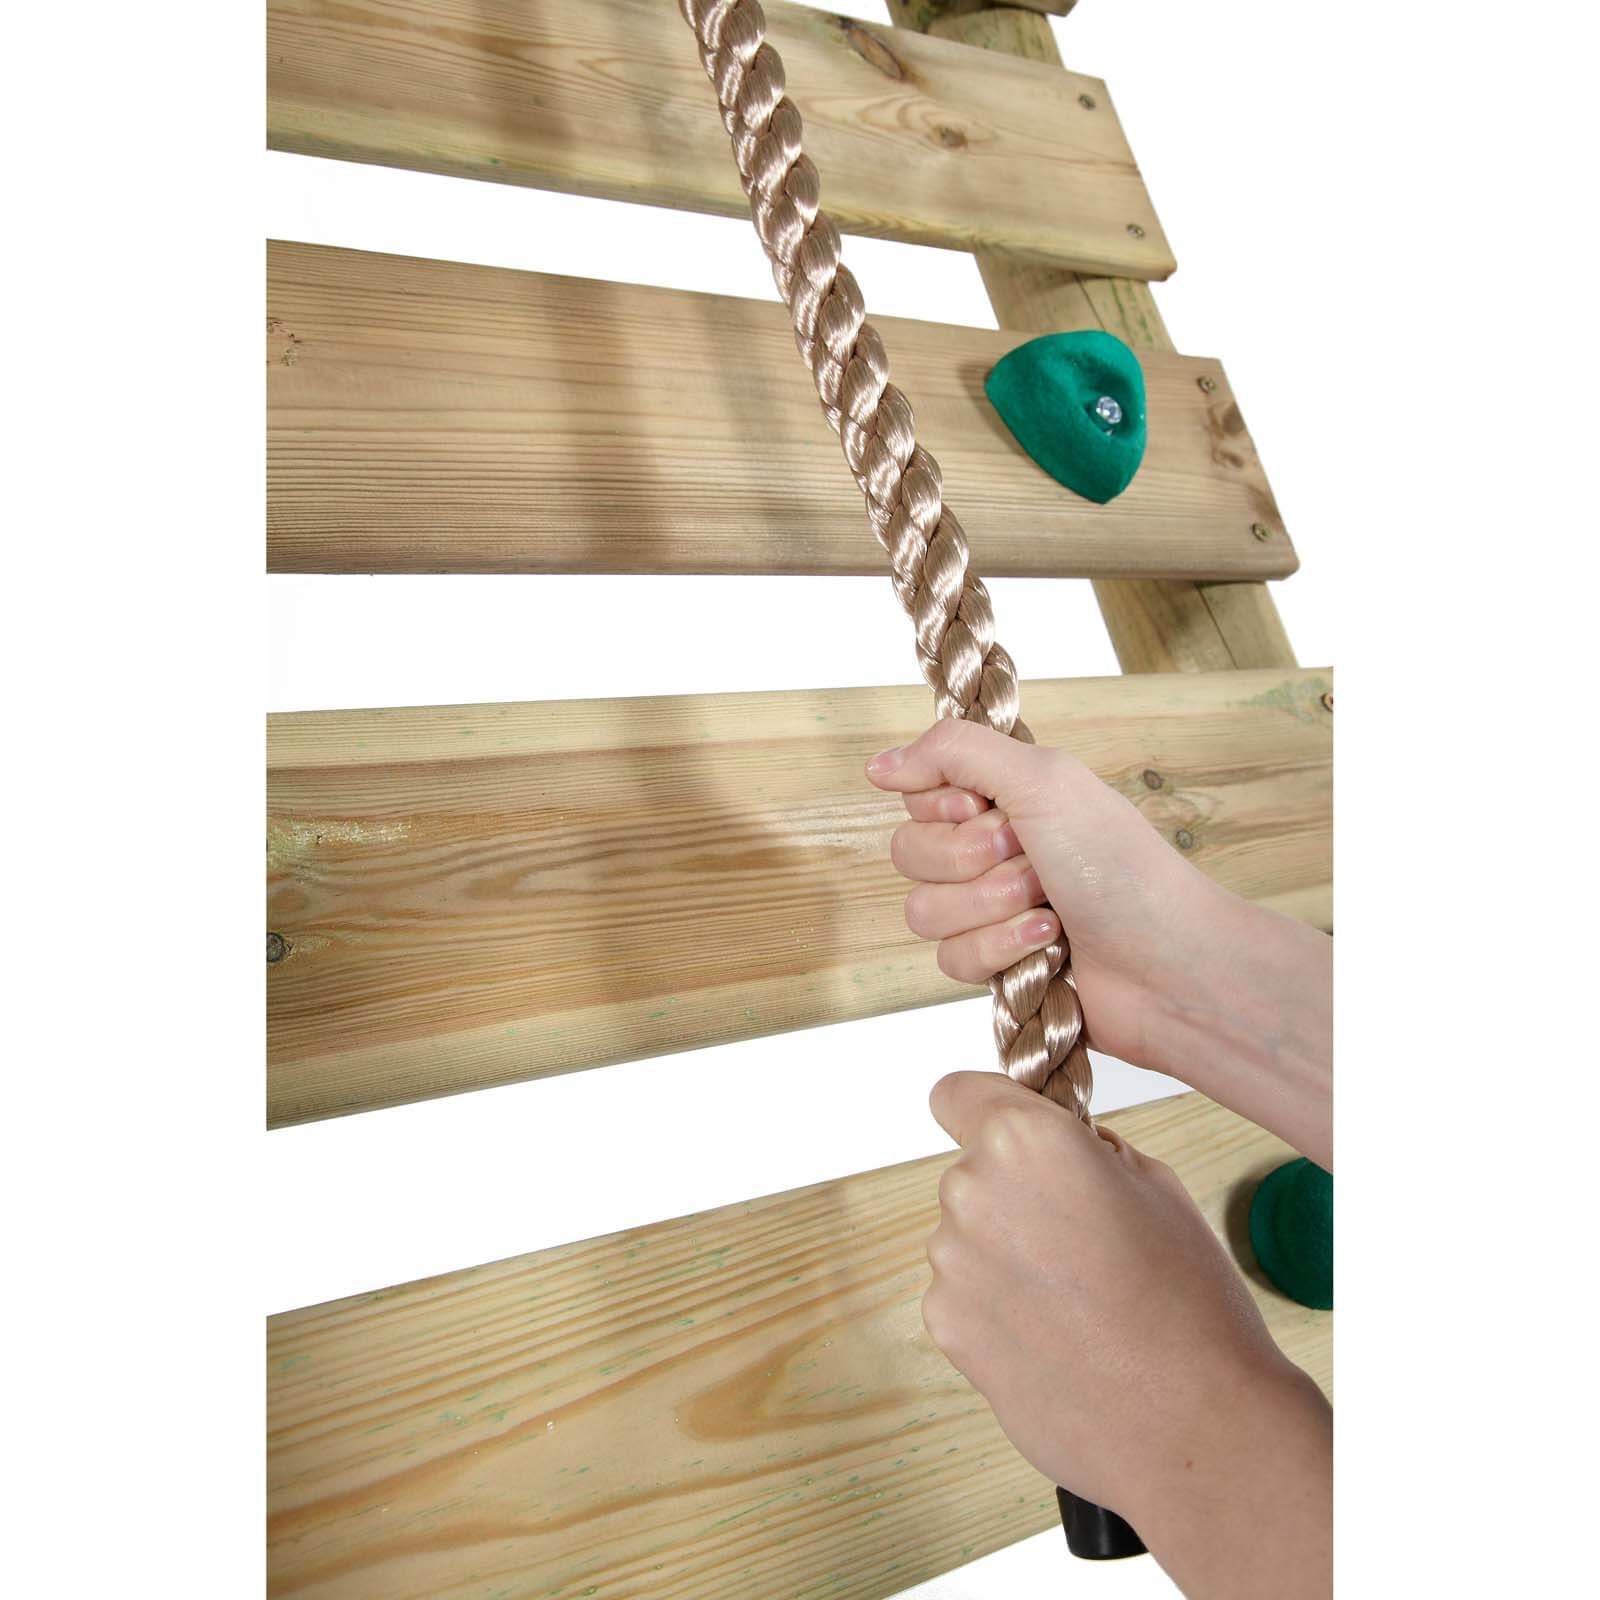 Plum Uakari Wooden Swing Set